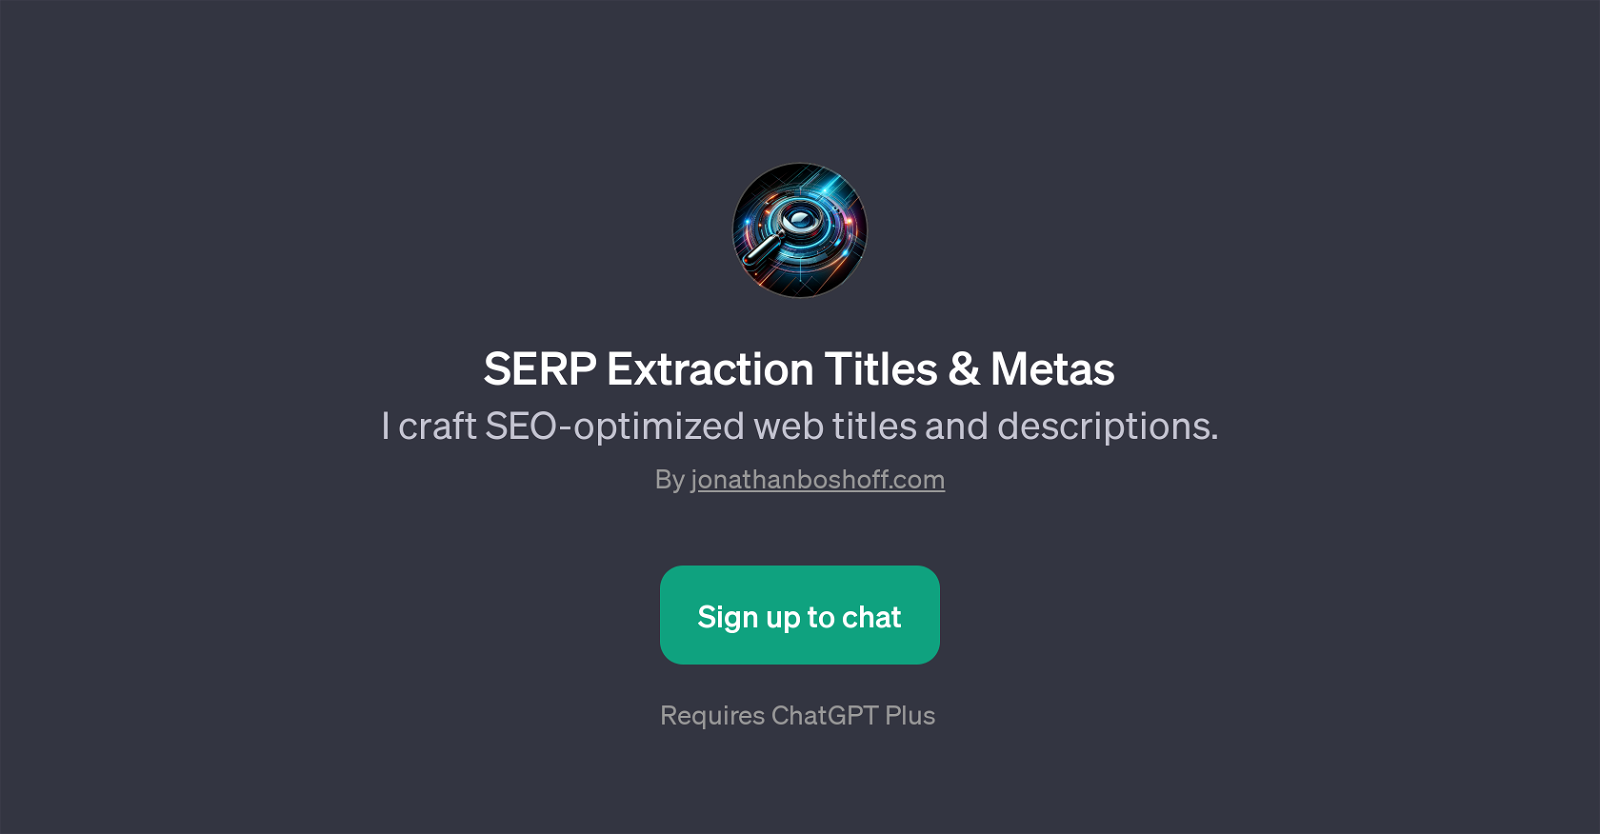 SERP Extraction Titles & Metas website